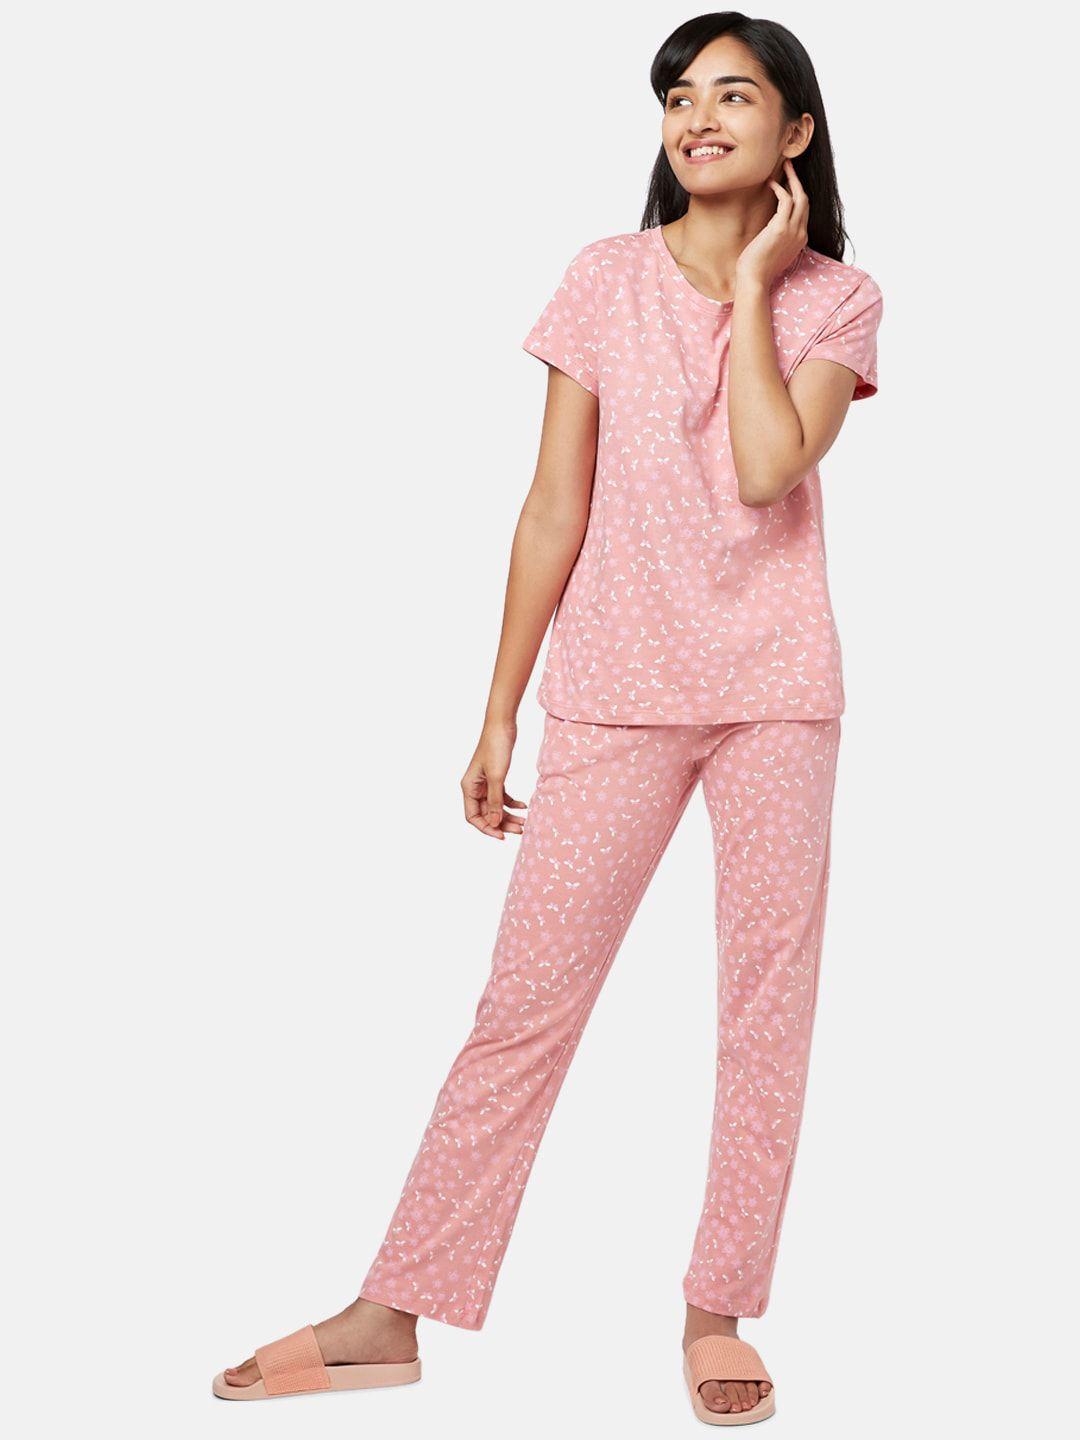 yu by pantaloons women pink & white printed night suit